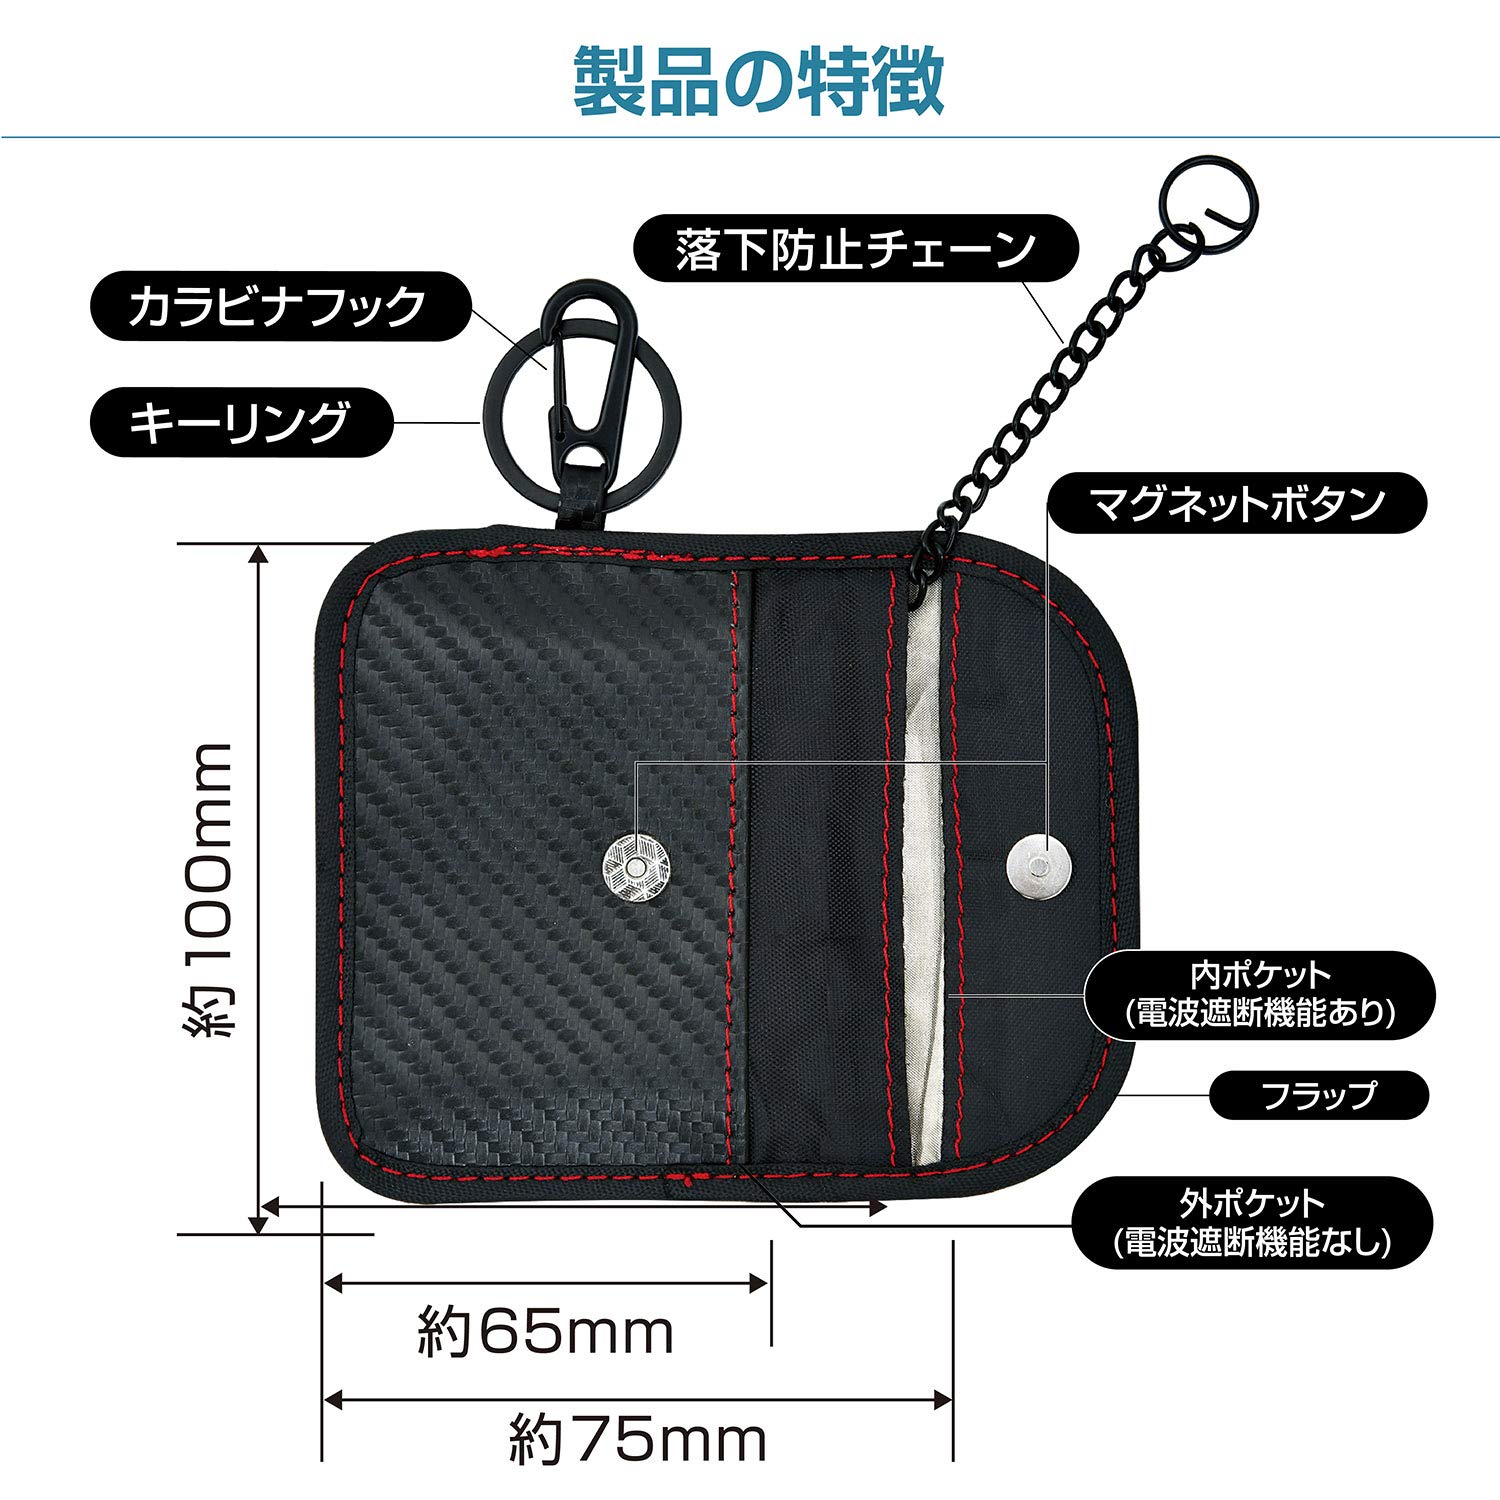 seiwa(SEIWA) в машине товар радиоволны блокировка "умный" ключ кейс WA56 карбоновый реле attack меры предотвращение сумка дистанционный ключ 1 листов входит 